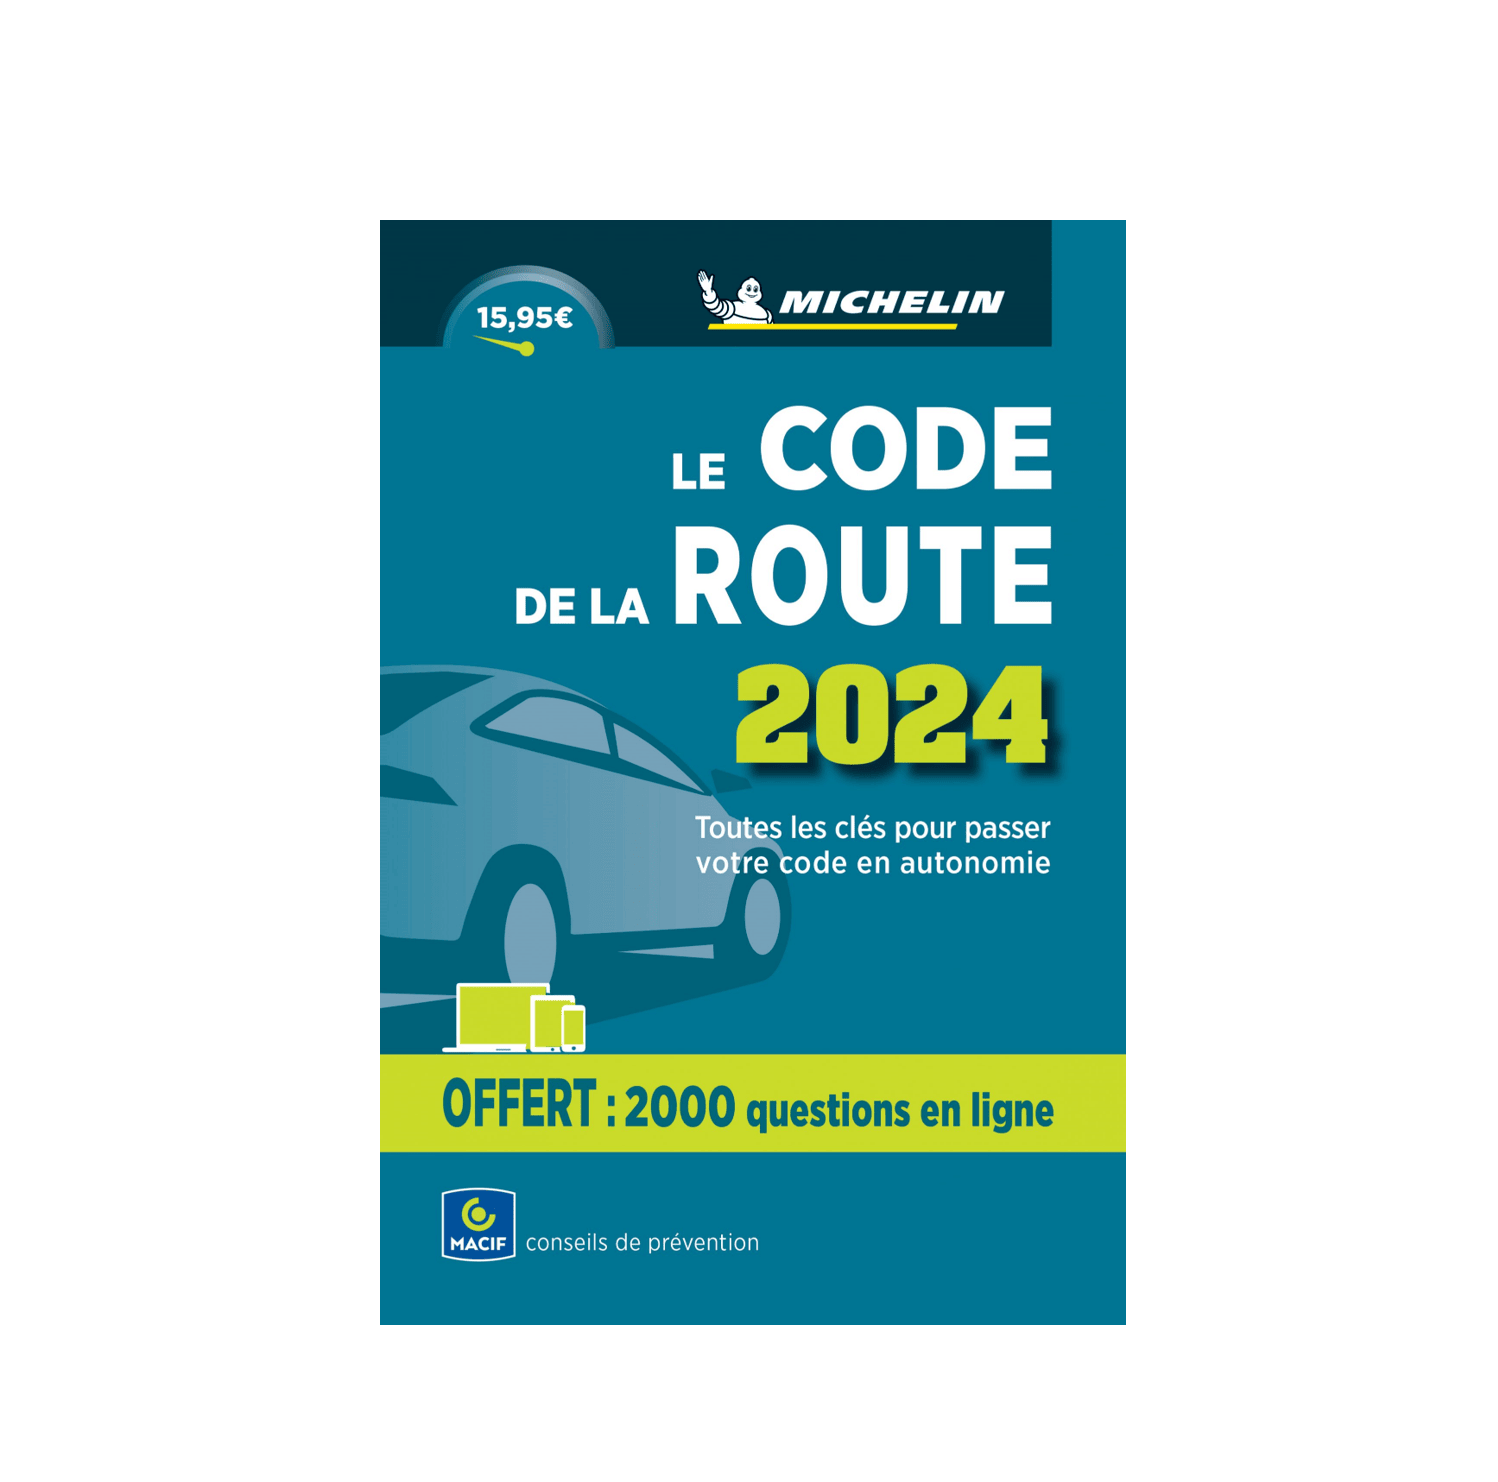 CODE DE LA ROUTE 2024 (ebook), Page Blanche, 1230007014741, Boeken